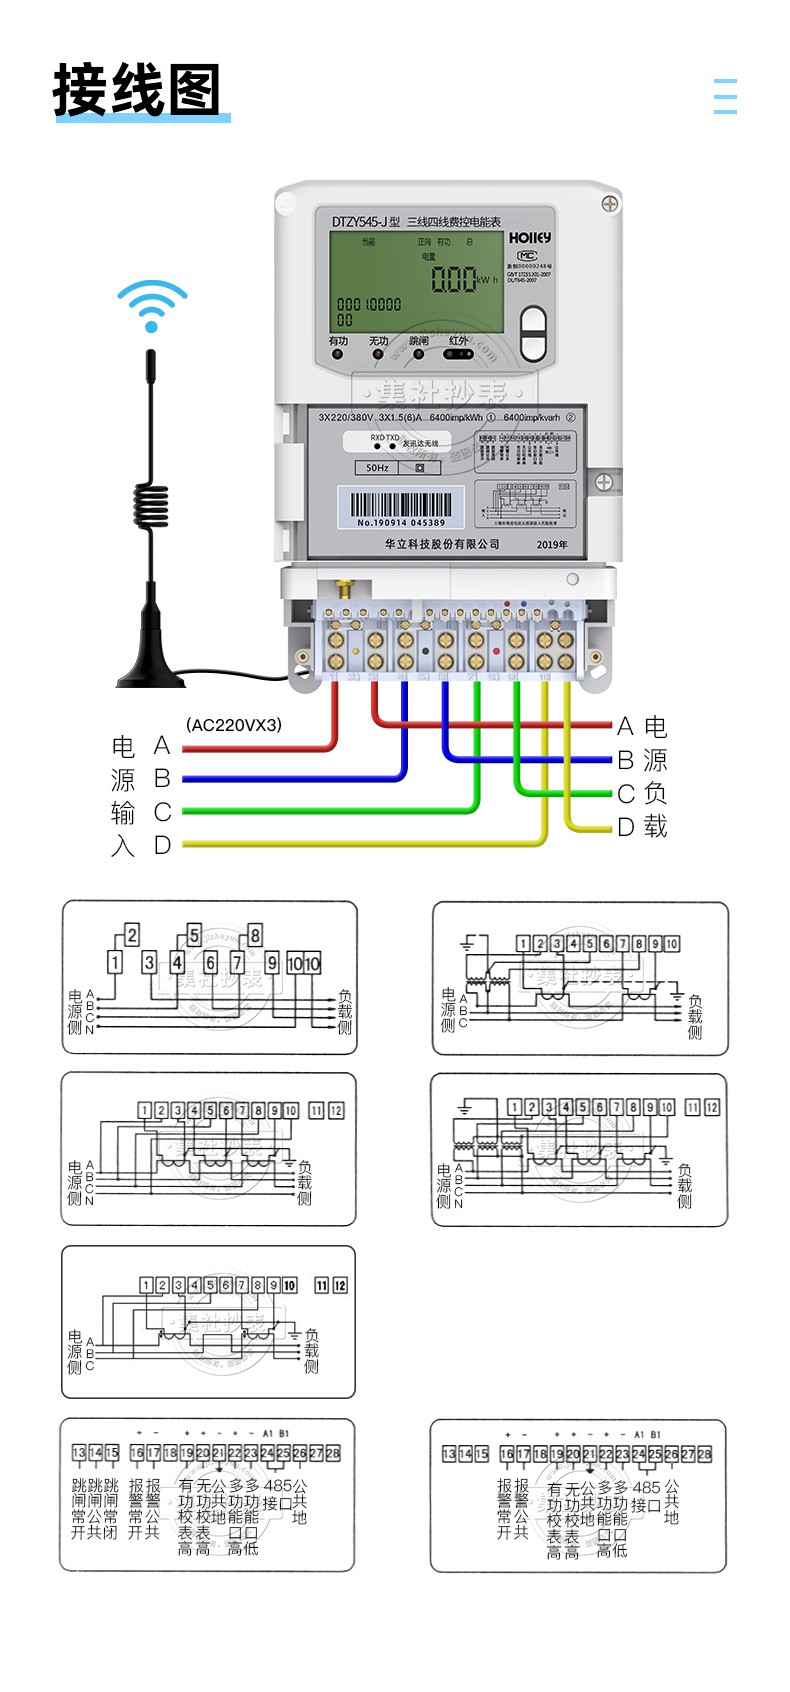 华立DTZY545-J三相费控微功率无线抄表电表 送园区用电预付费系统